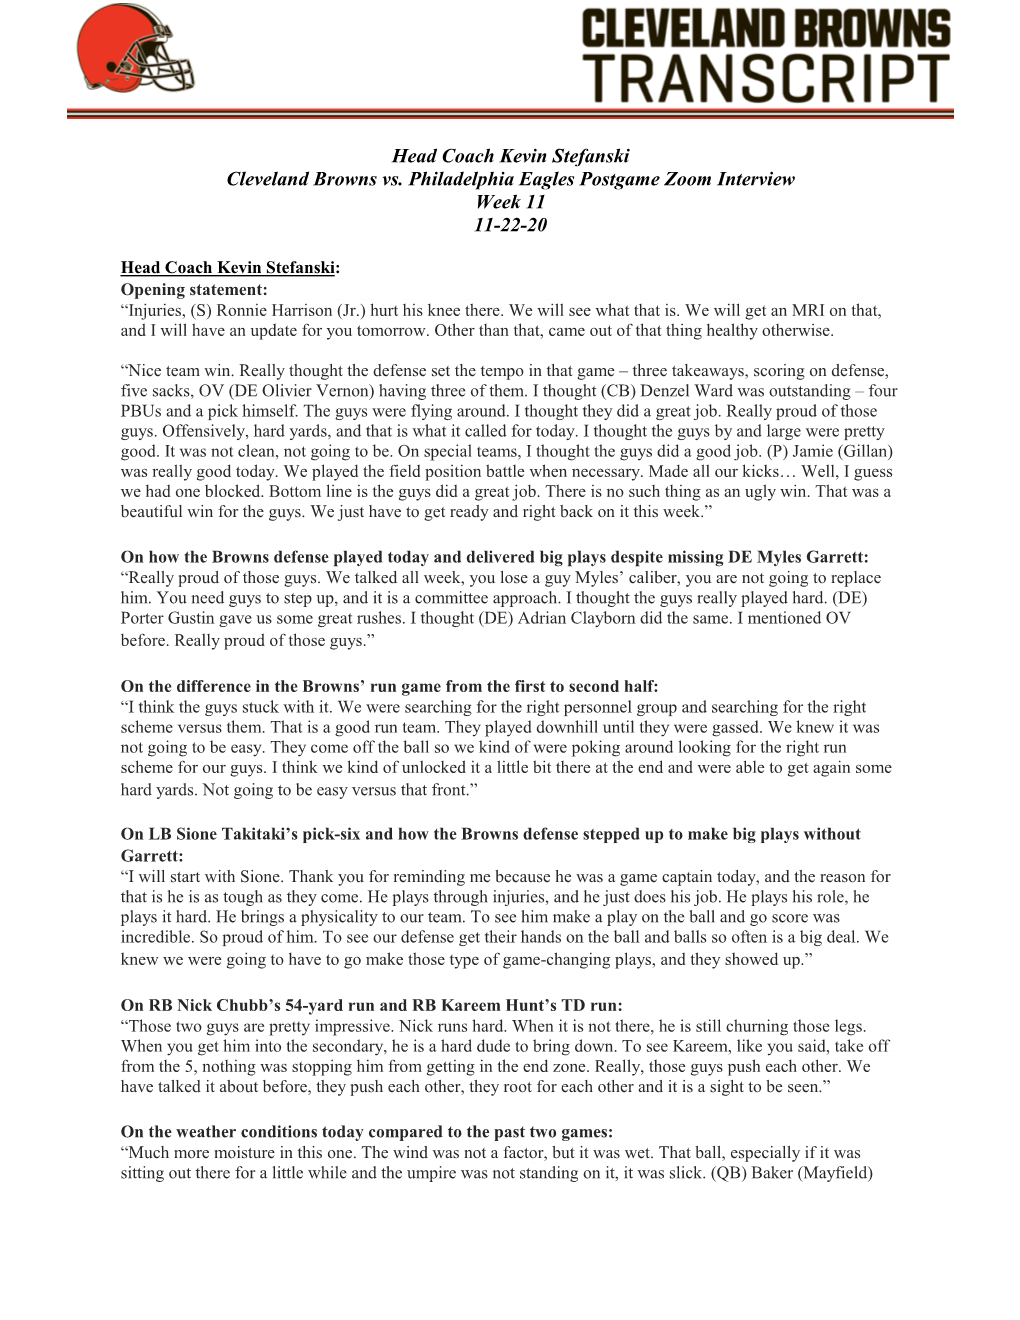 Head Coach Kevin Stefanski Cleveland Browns Vs. Philadelphia Eagles Postgame Zoom Interview Week 11 11-22-20